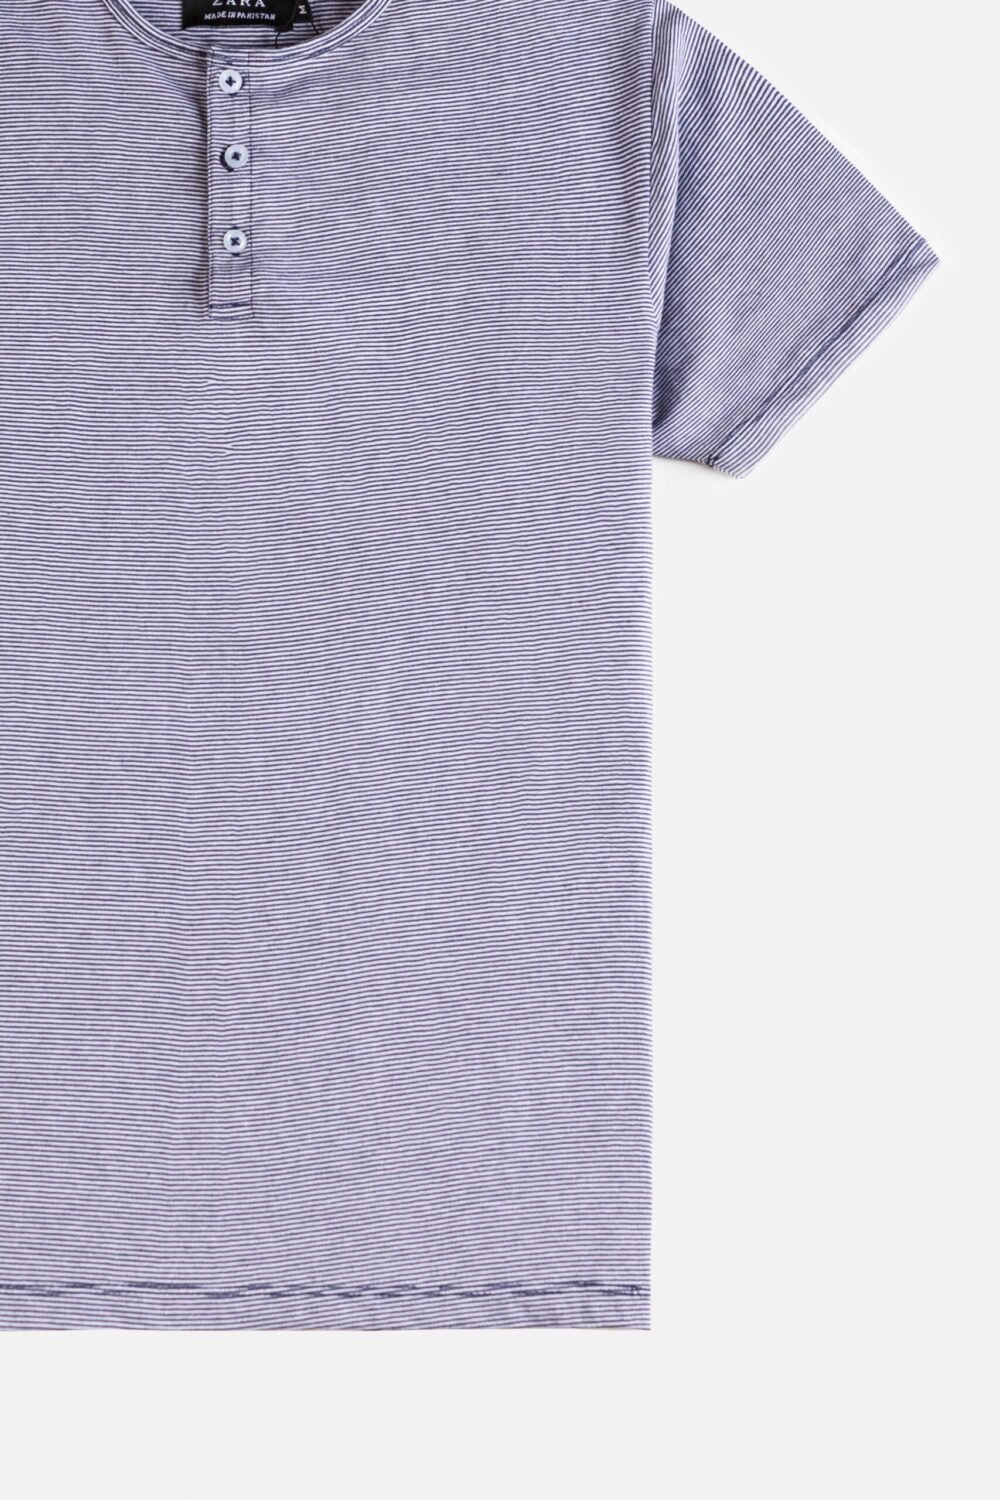 ZR Henley Cotton T Shirt – Flint